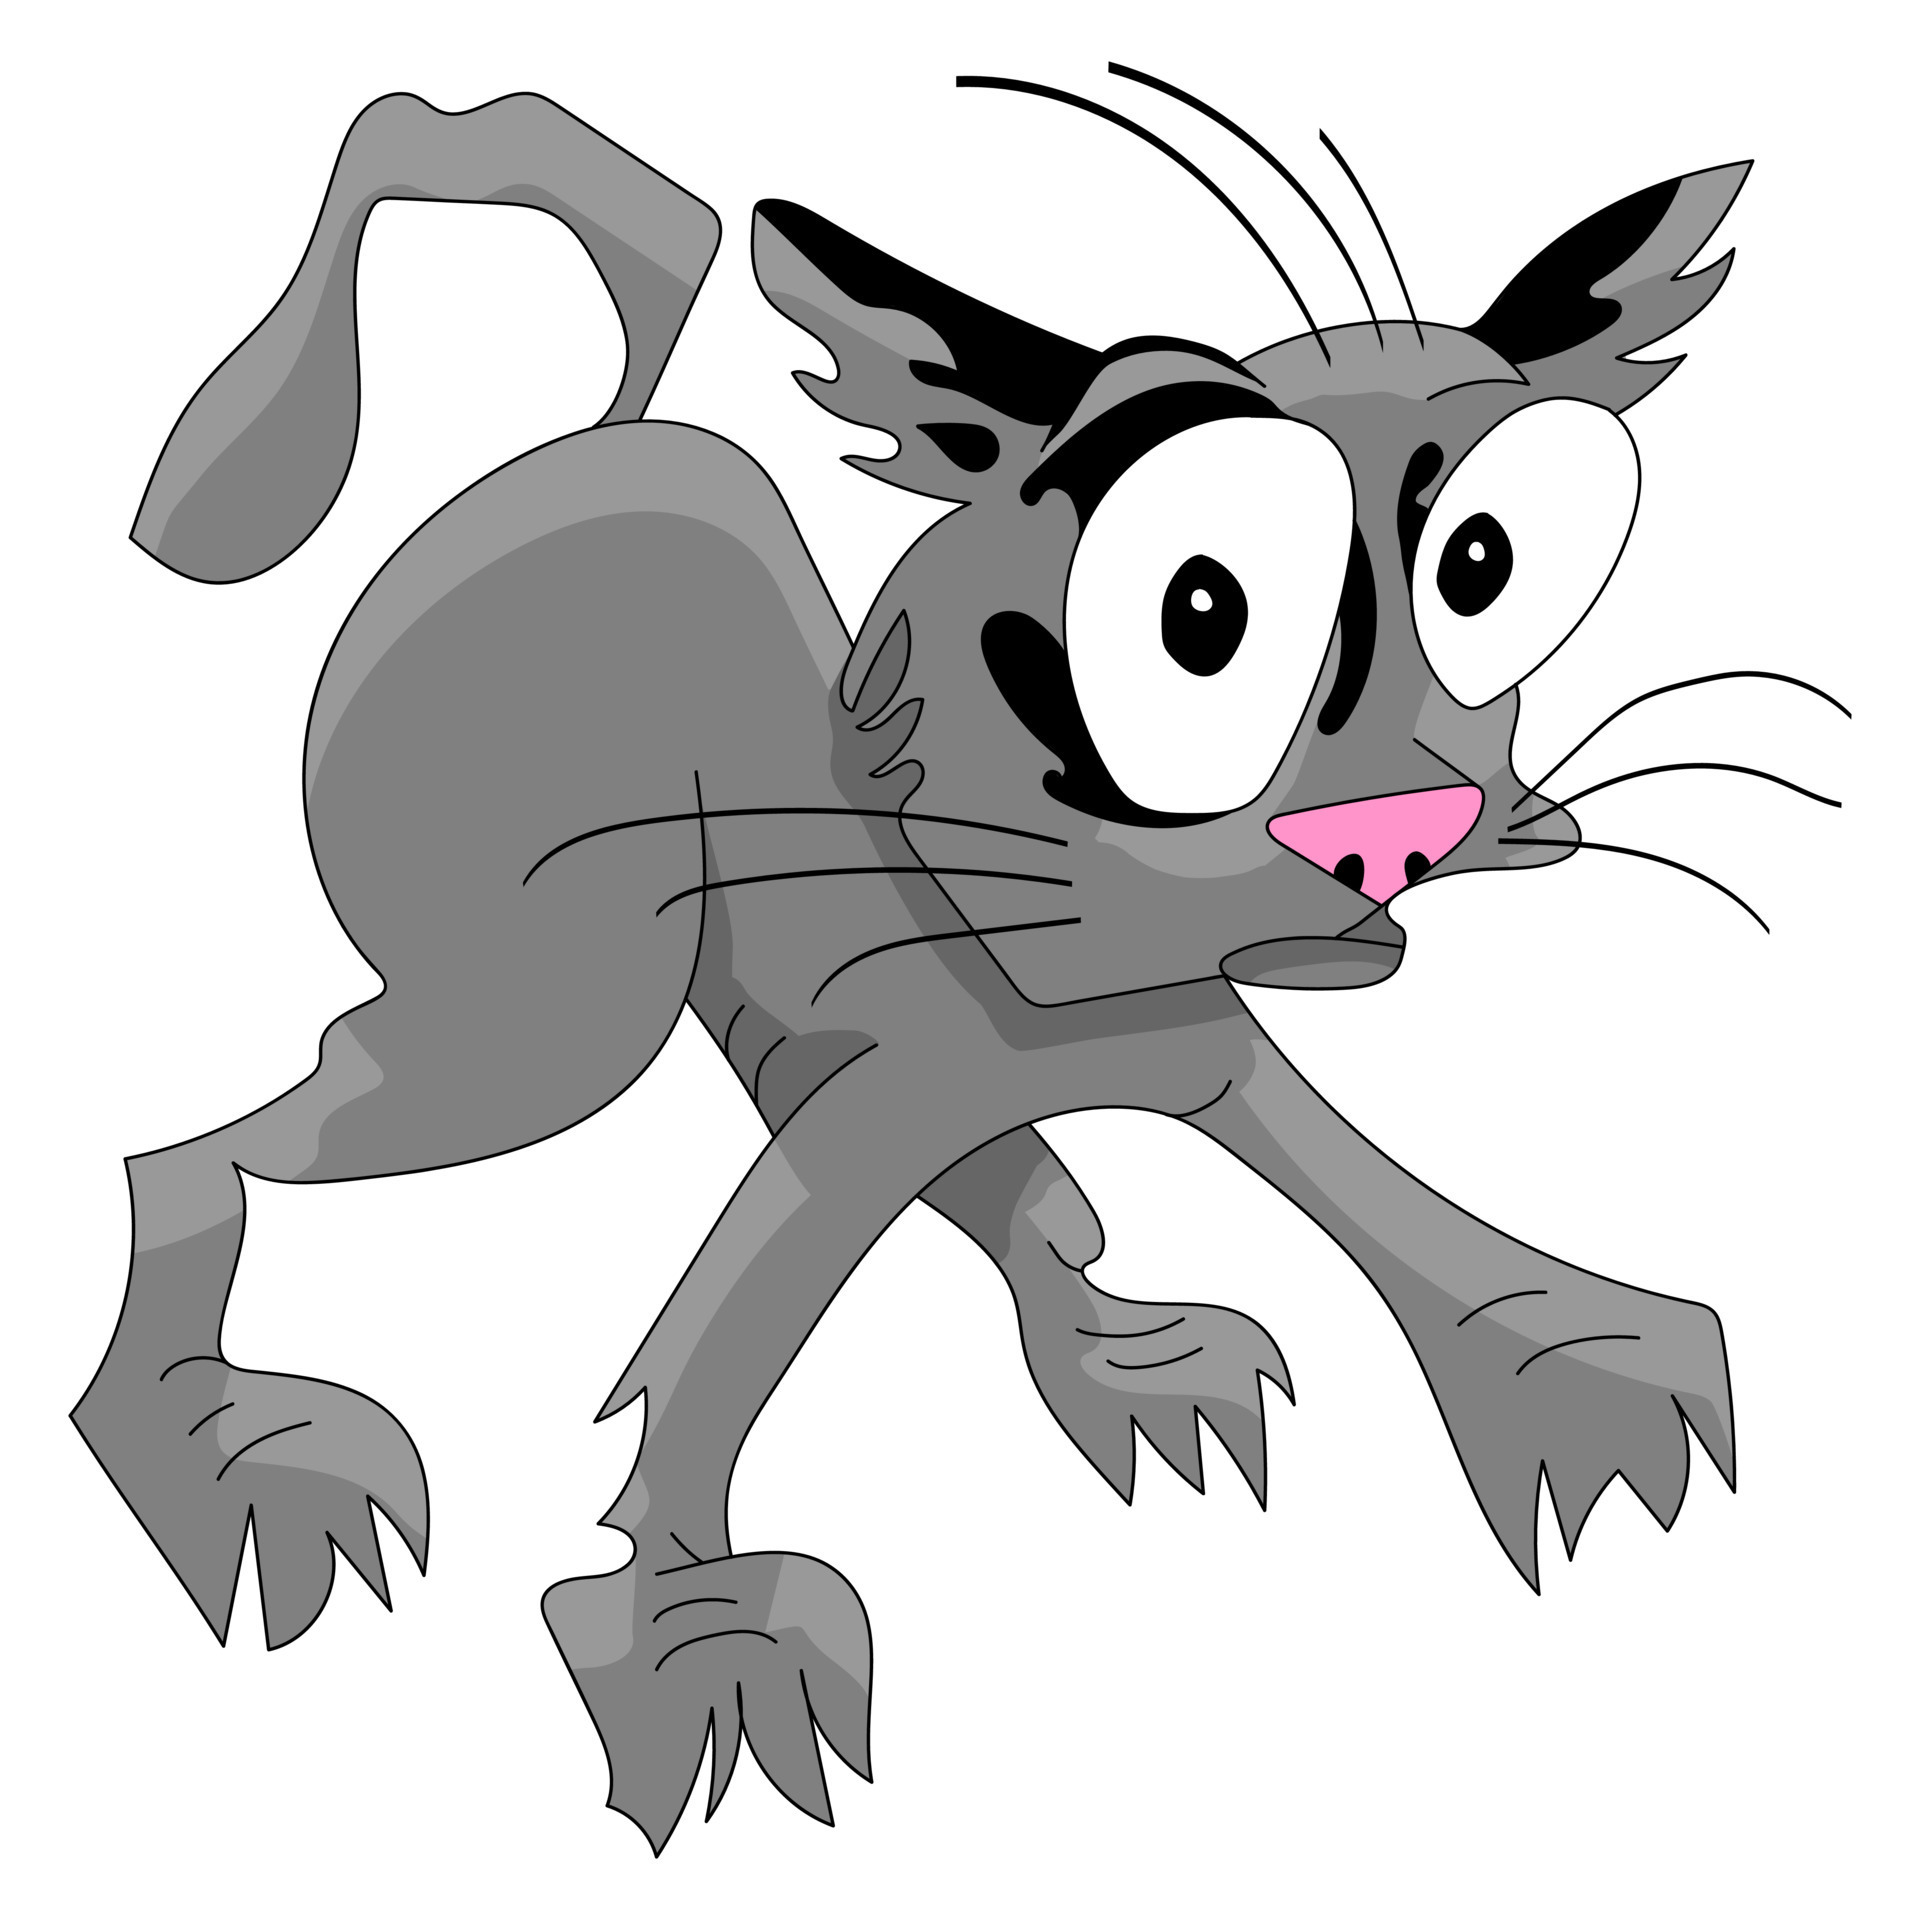 Scared cat icon. Funny gray kitten in fear